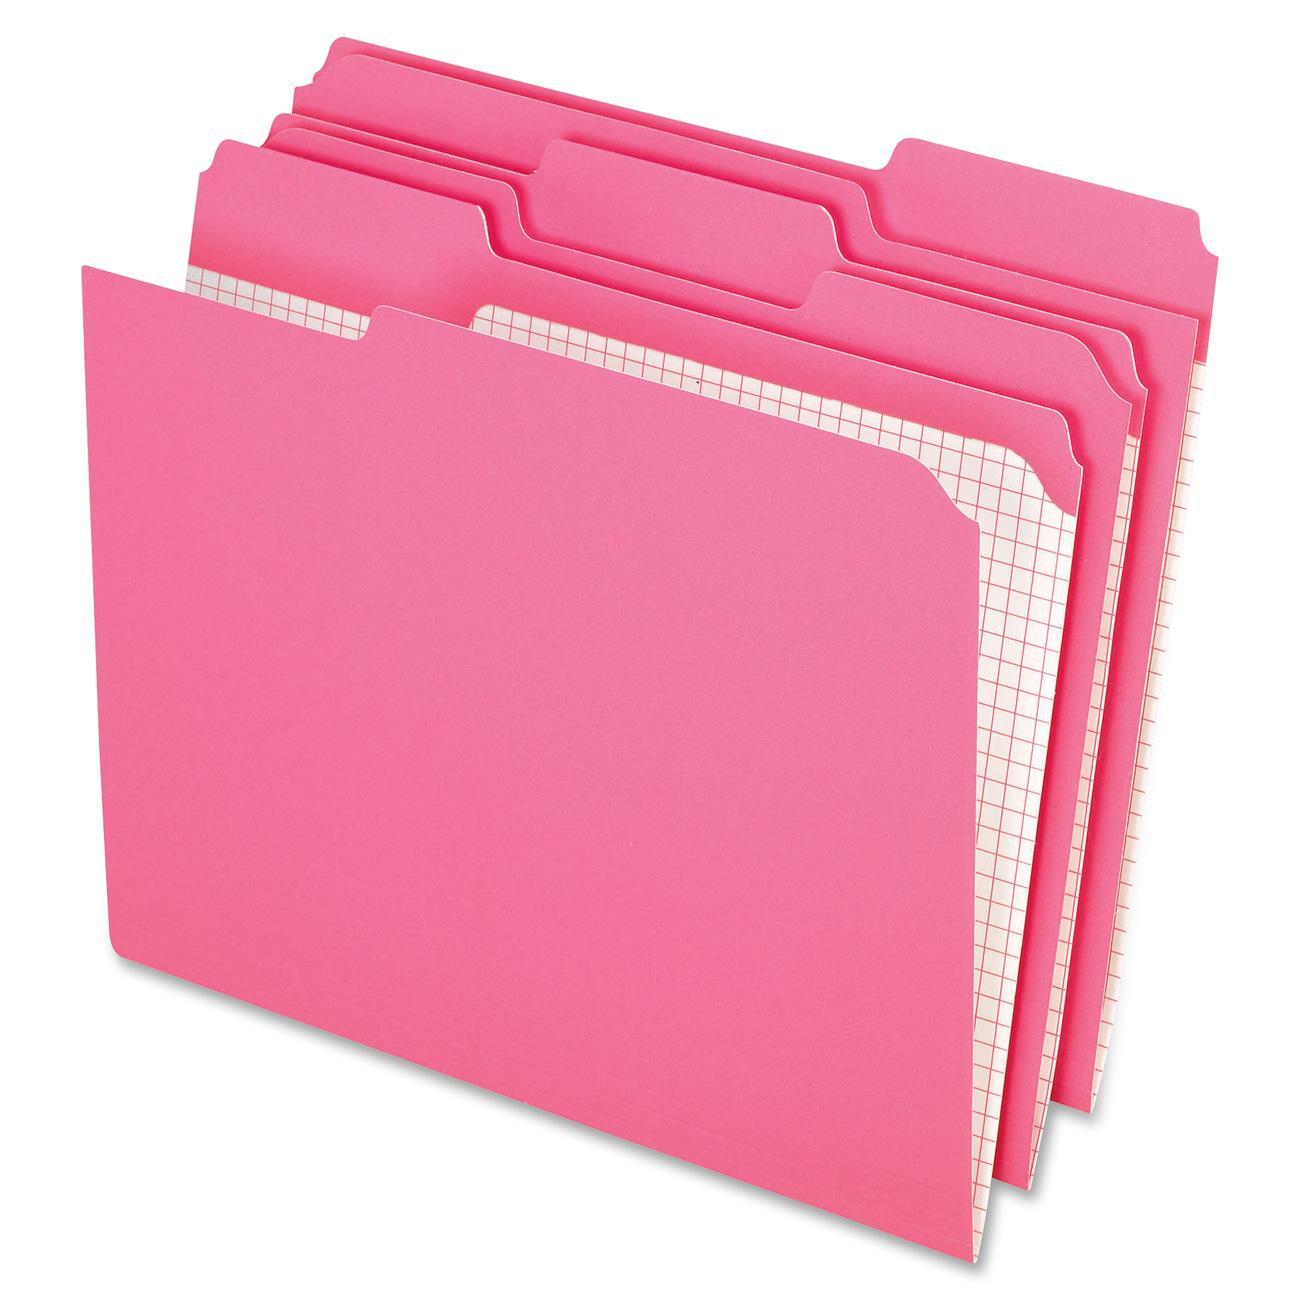 Reinforced Top Tab File Folders, 1/3 Cut, Letter, Pink, 100/Box